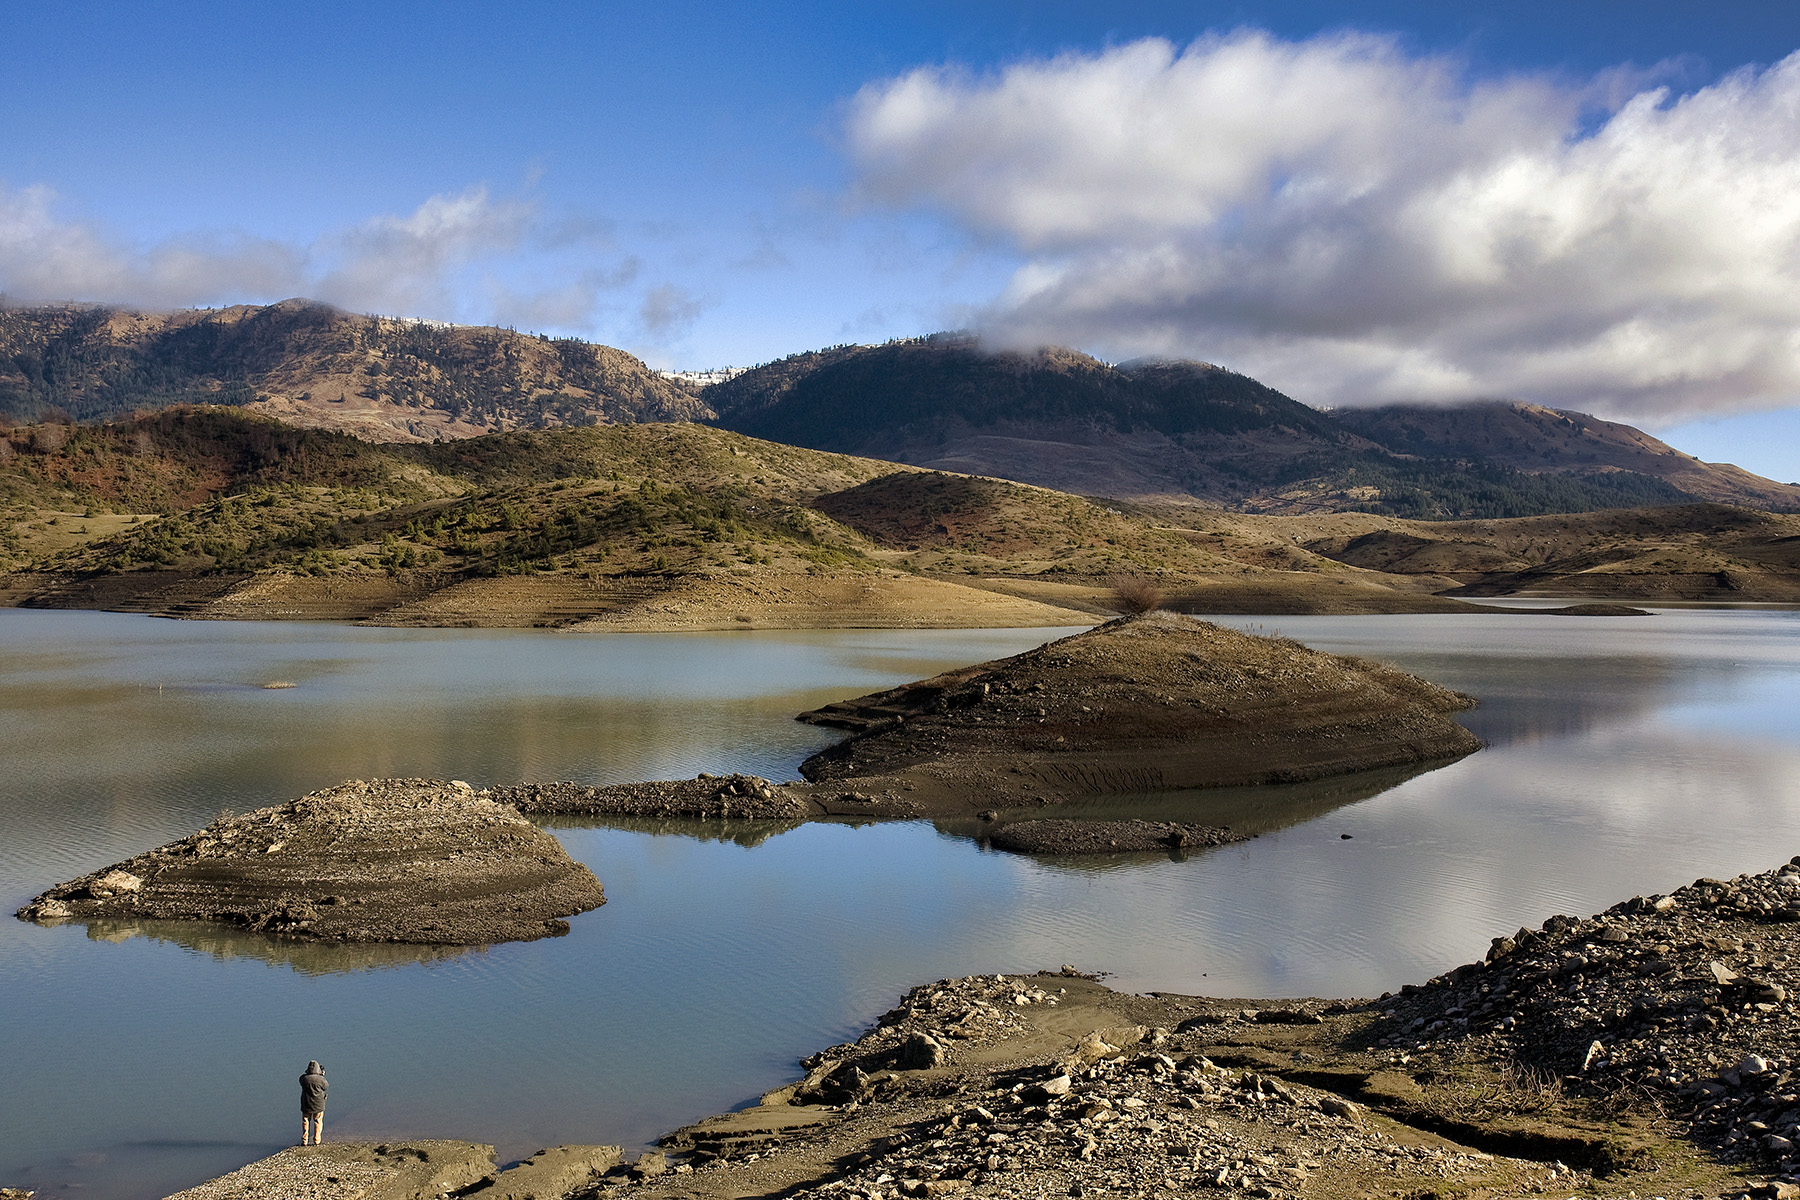 Λίμνη Πηγών Αώου: Η ορεινή τεχνητή λίμνη που θυμίζει παραμύθι!